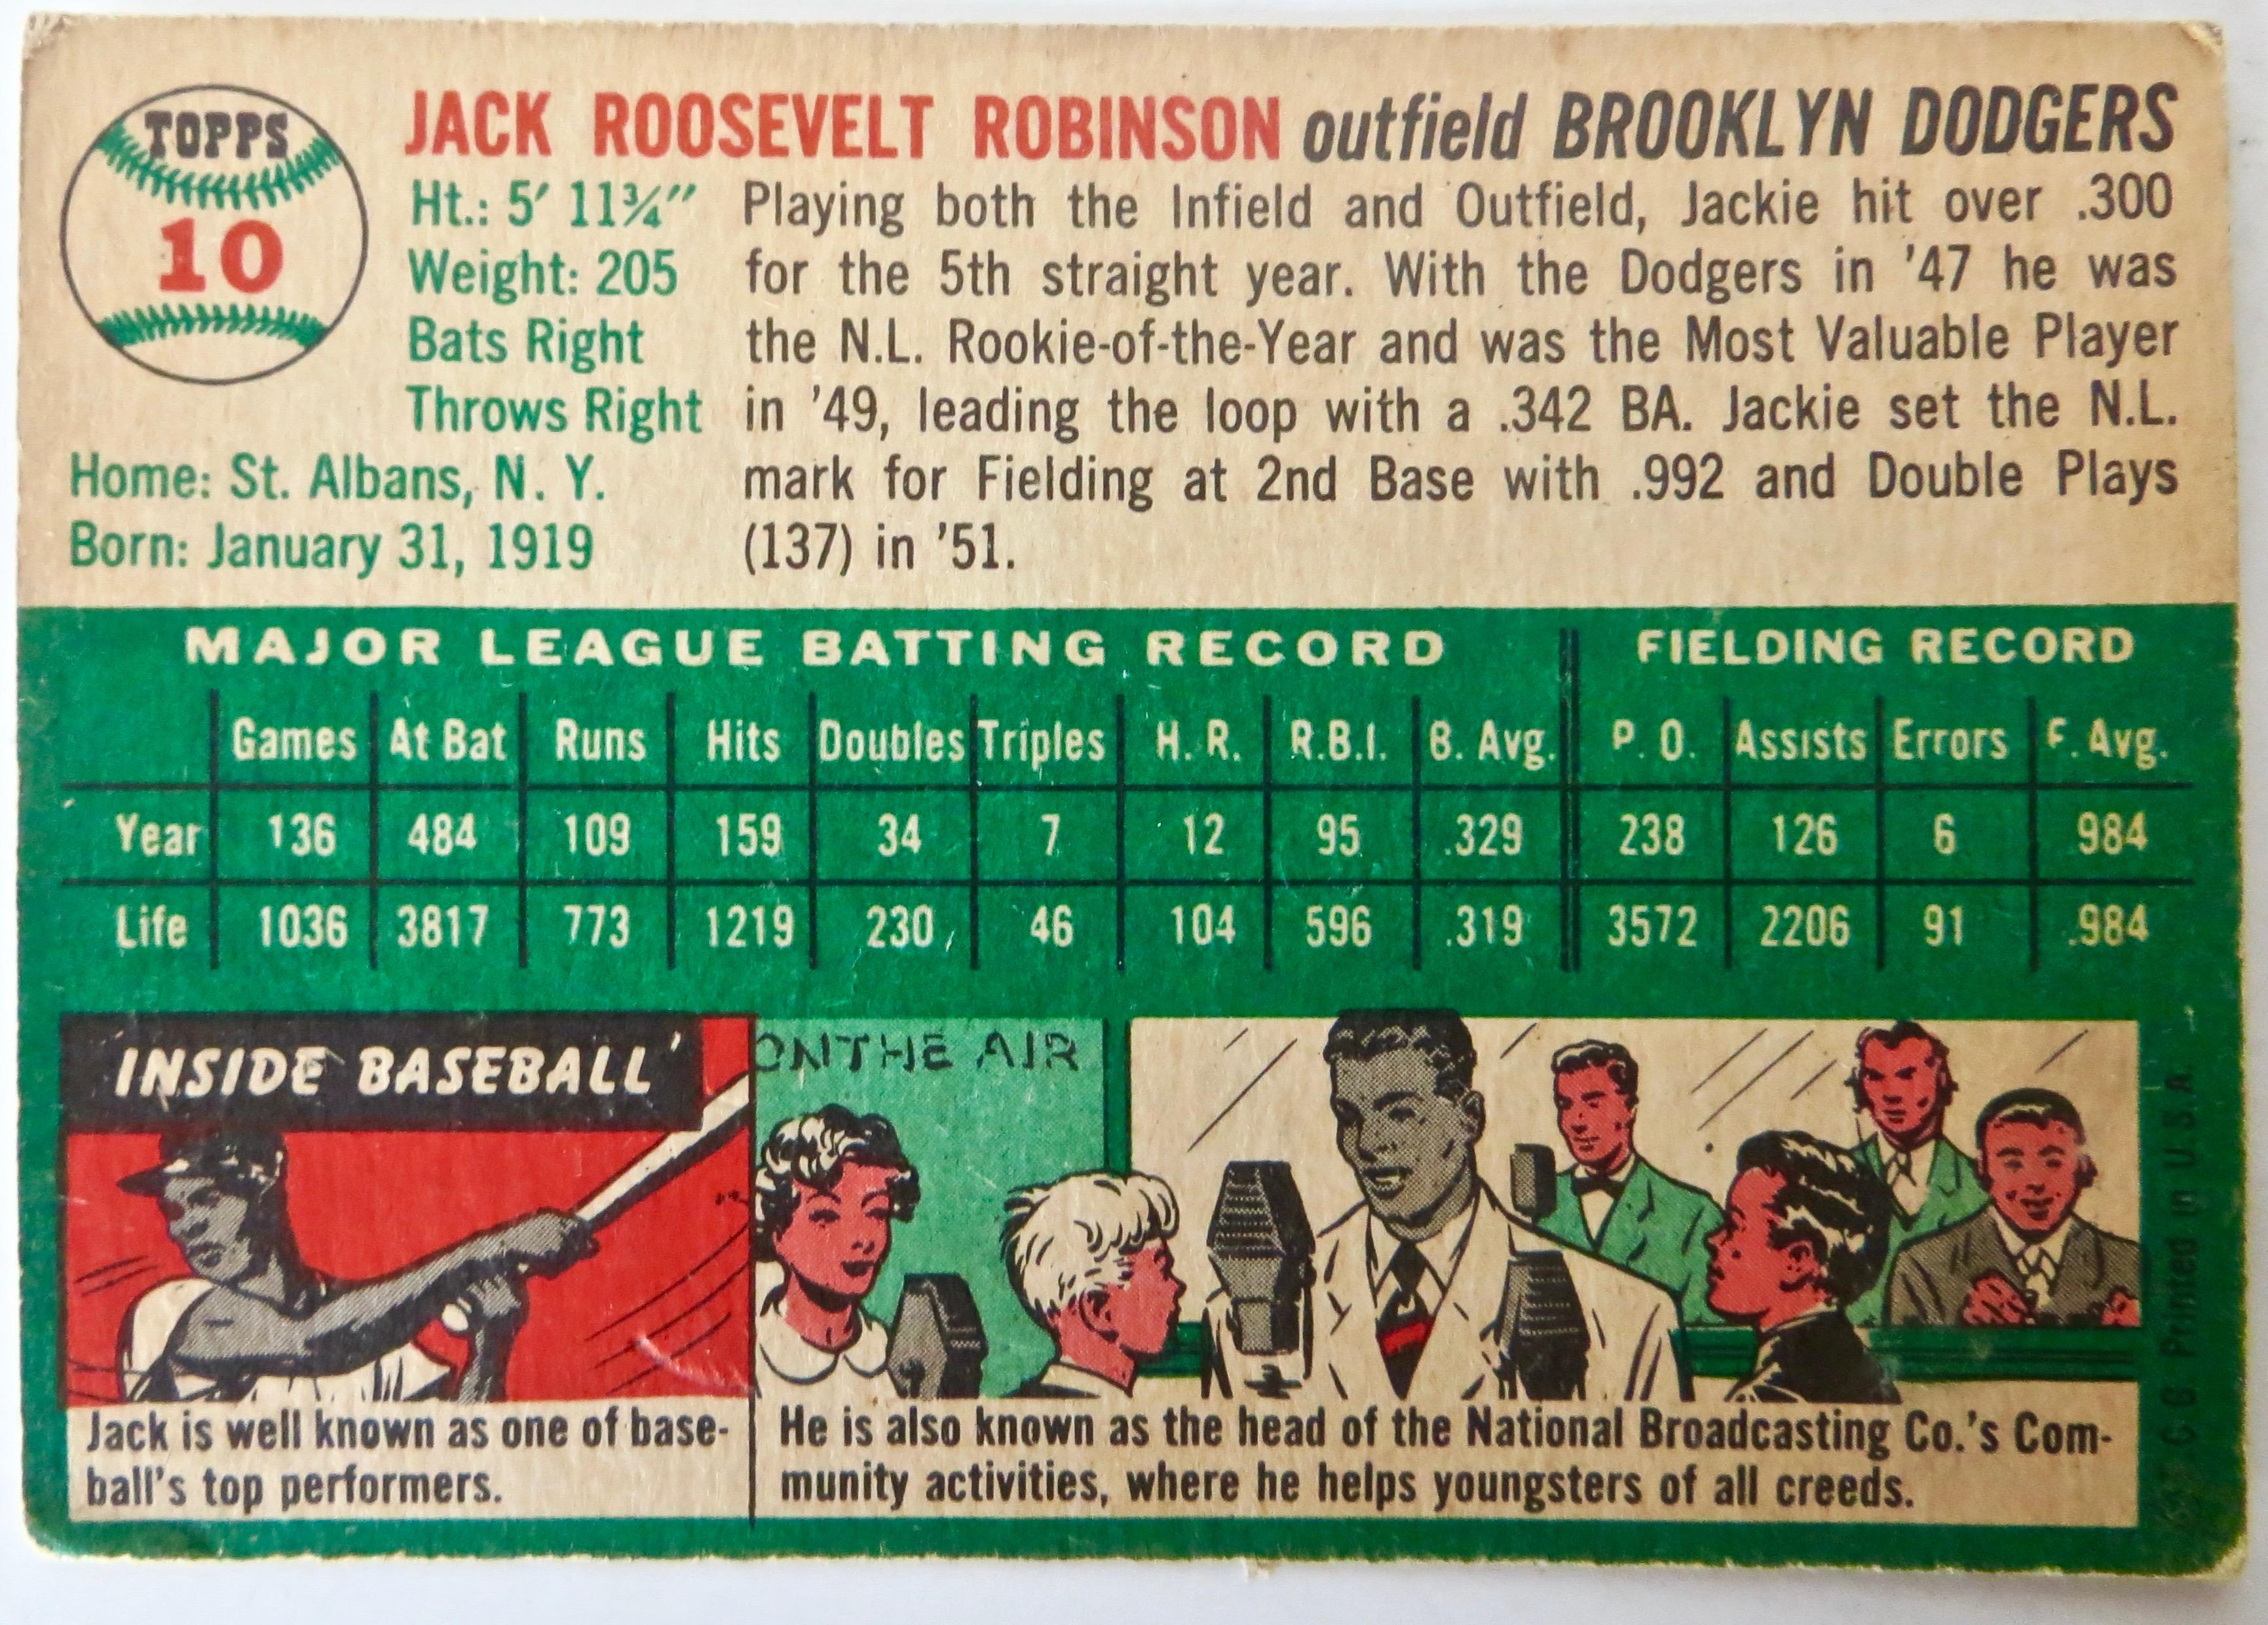 Sporting Art Jackie Robinson Ensemble, Topps #10 1954 Baseball Card and Still Bank circa 1954